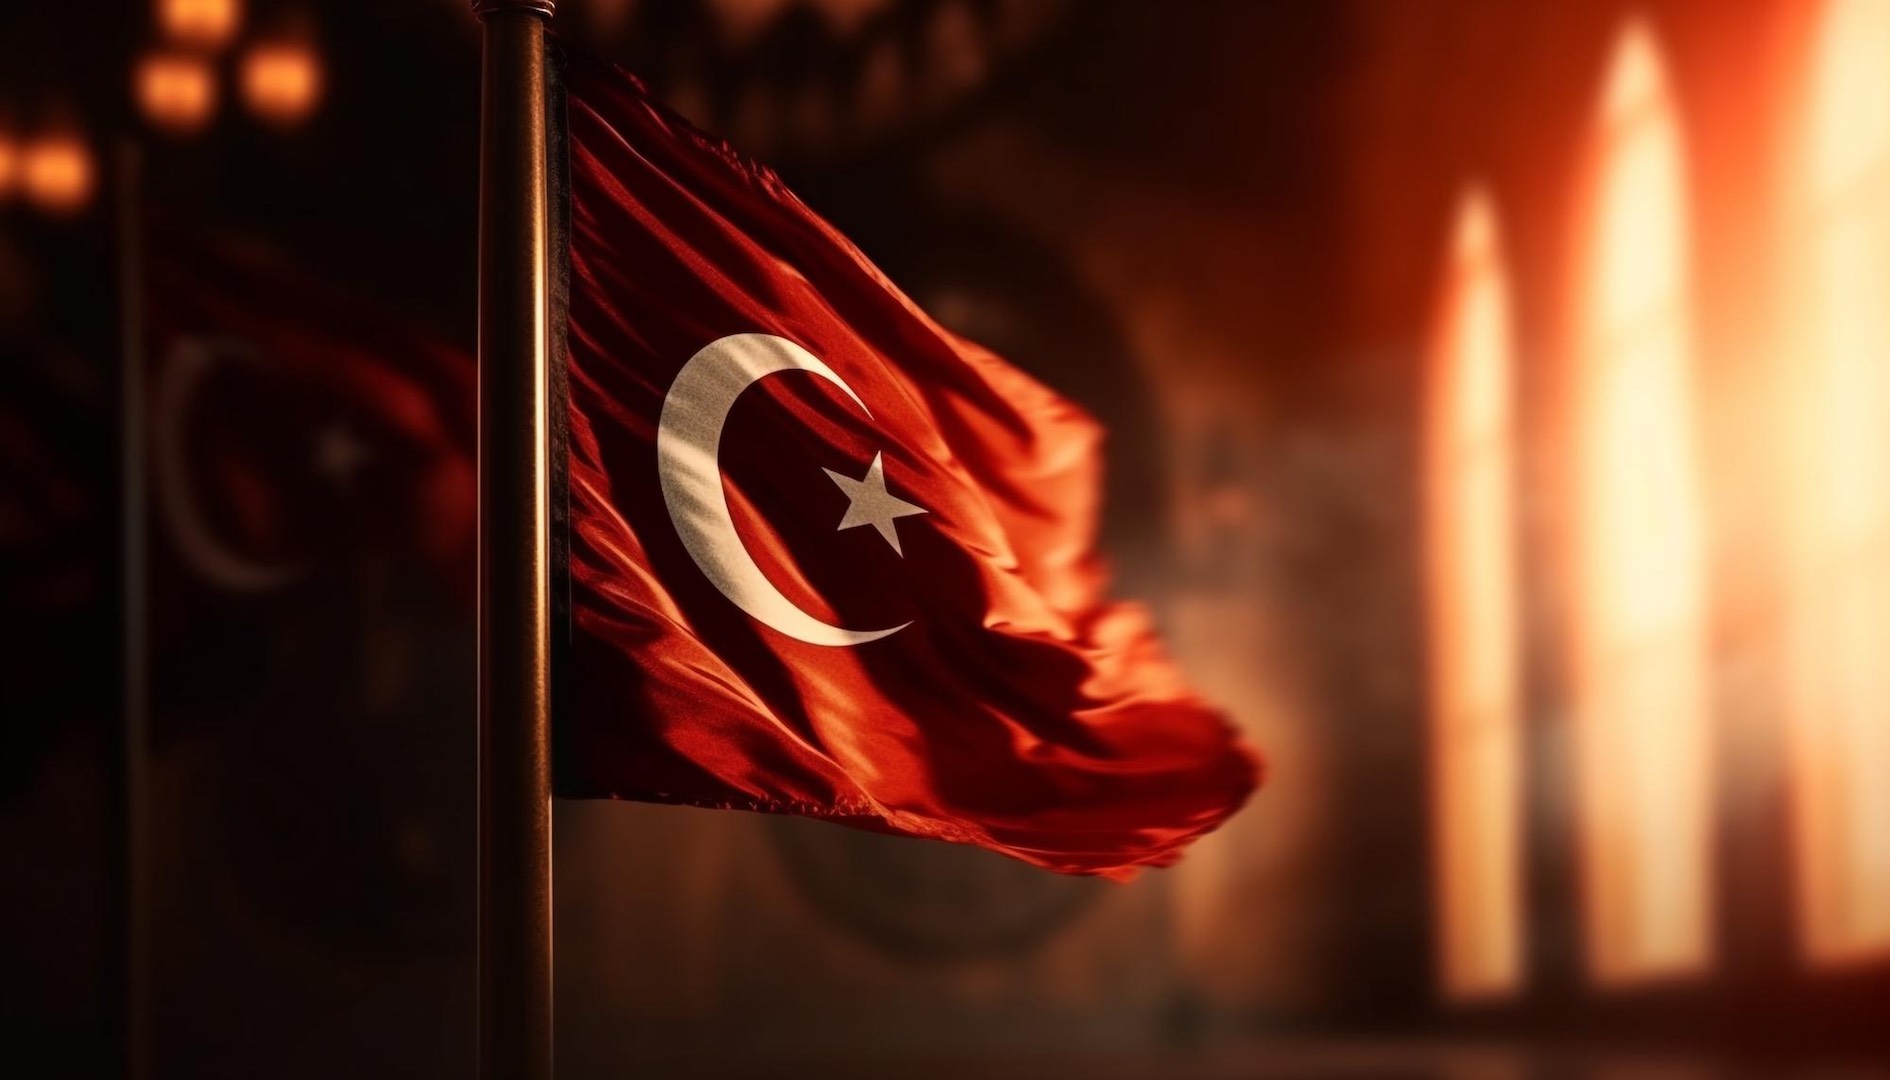 سياسة الإدارة التركية بقيادة أردوغان تواجه انتقادات في التعامل مع الأزمات الاقتصادية بعد ارتفاع معدل التضخم في تركيا إلى 68.5% خلال شهر مارس